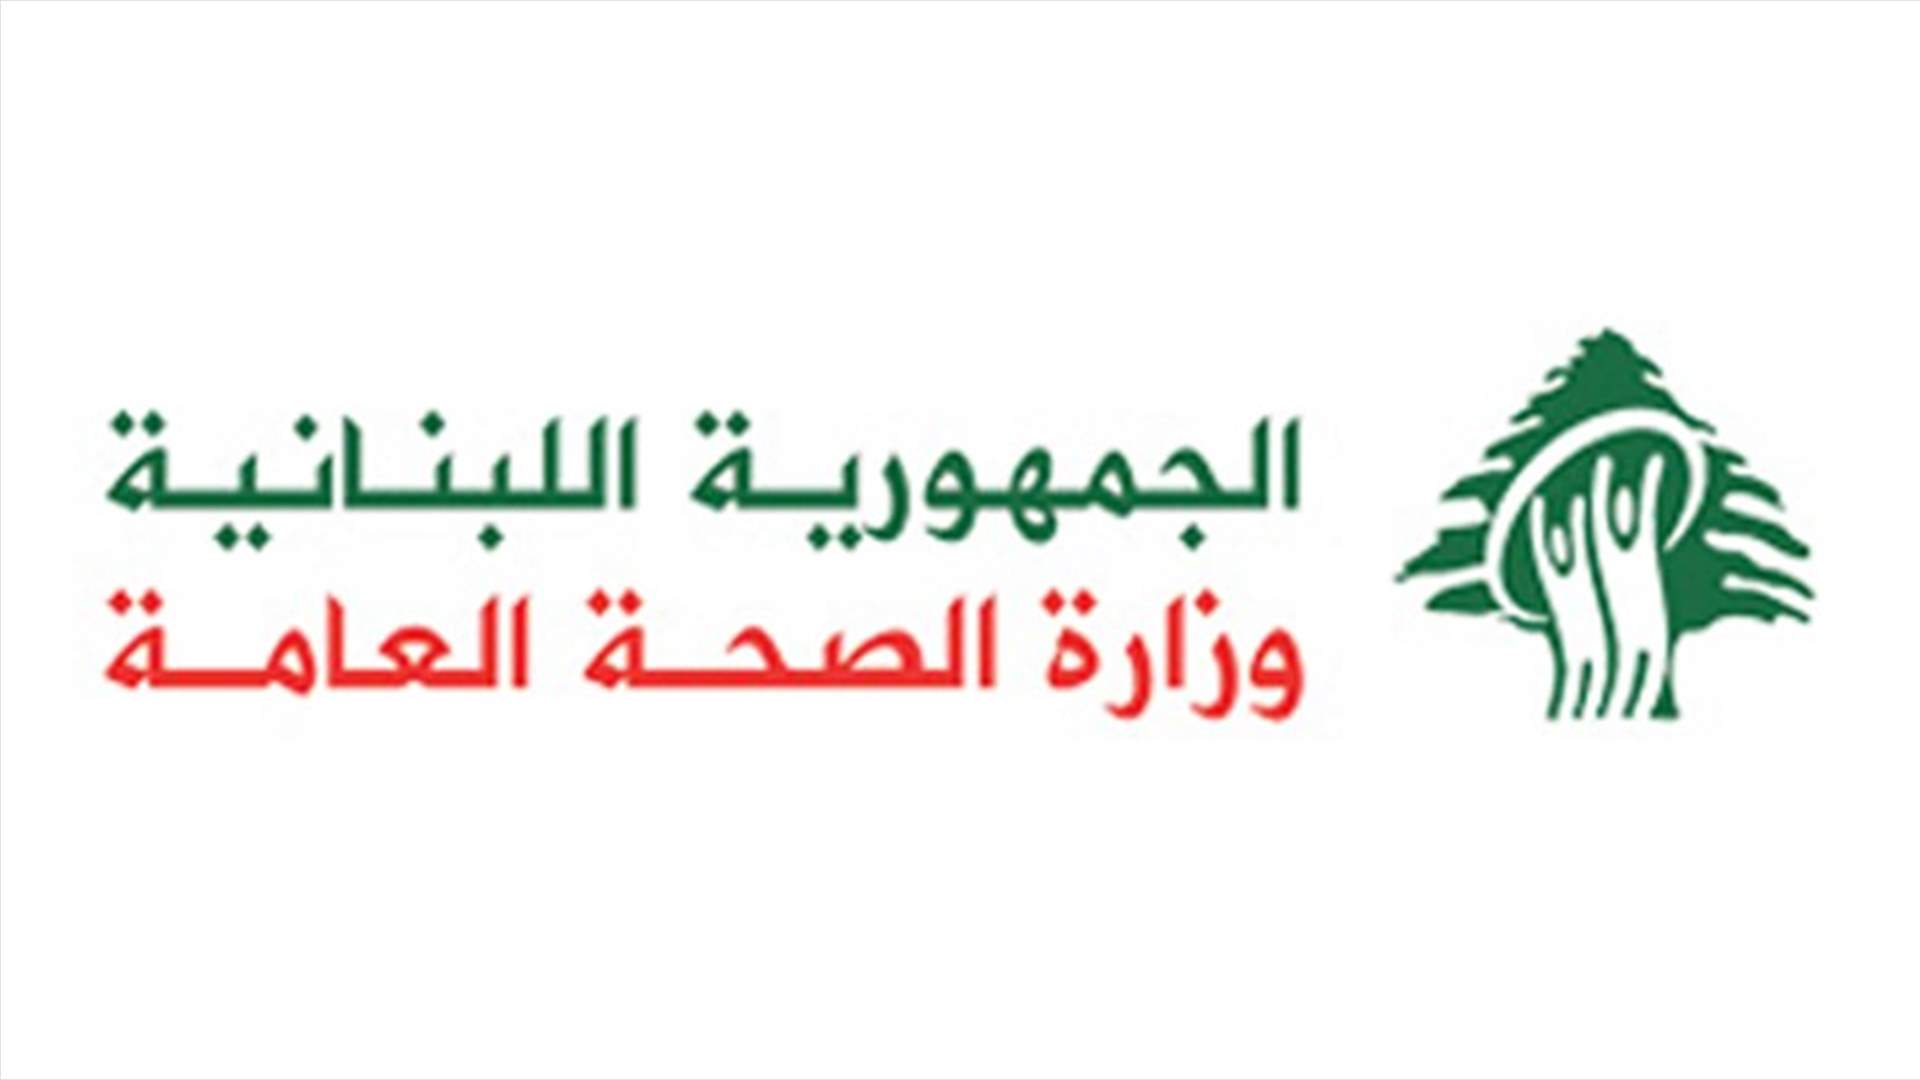 وزارة الصحة: تسجيل 17 إصابة جديدة بكورونا في لبنان